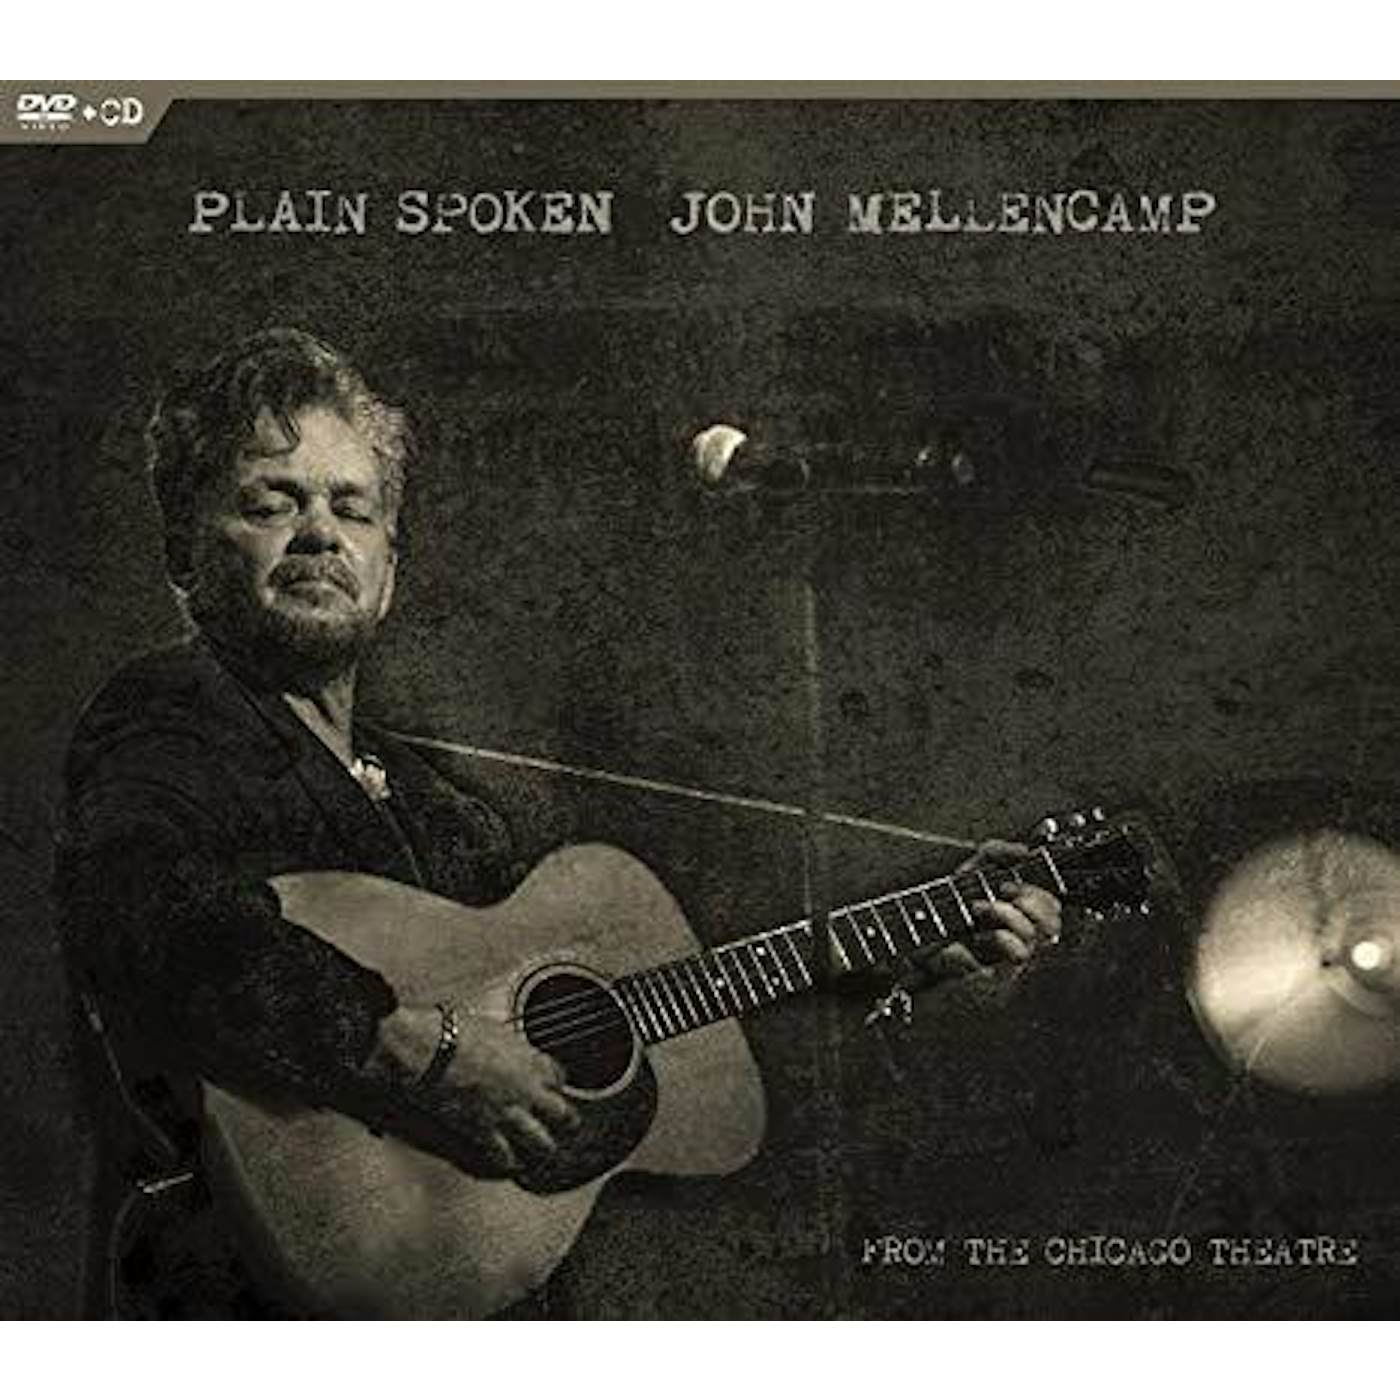 John Mellencamp PLAIN SPOKEN FROM THE CHICAGO THEATRE (CD/DVD) CD